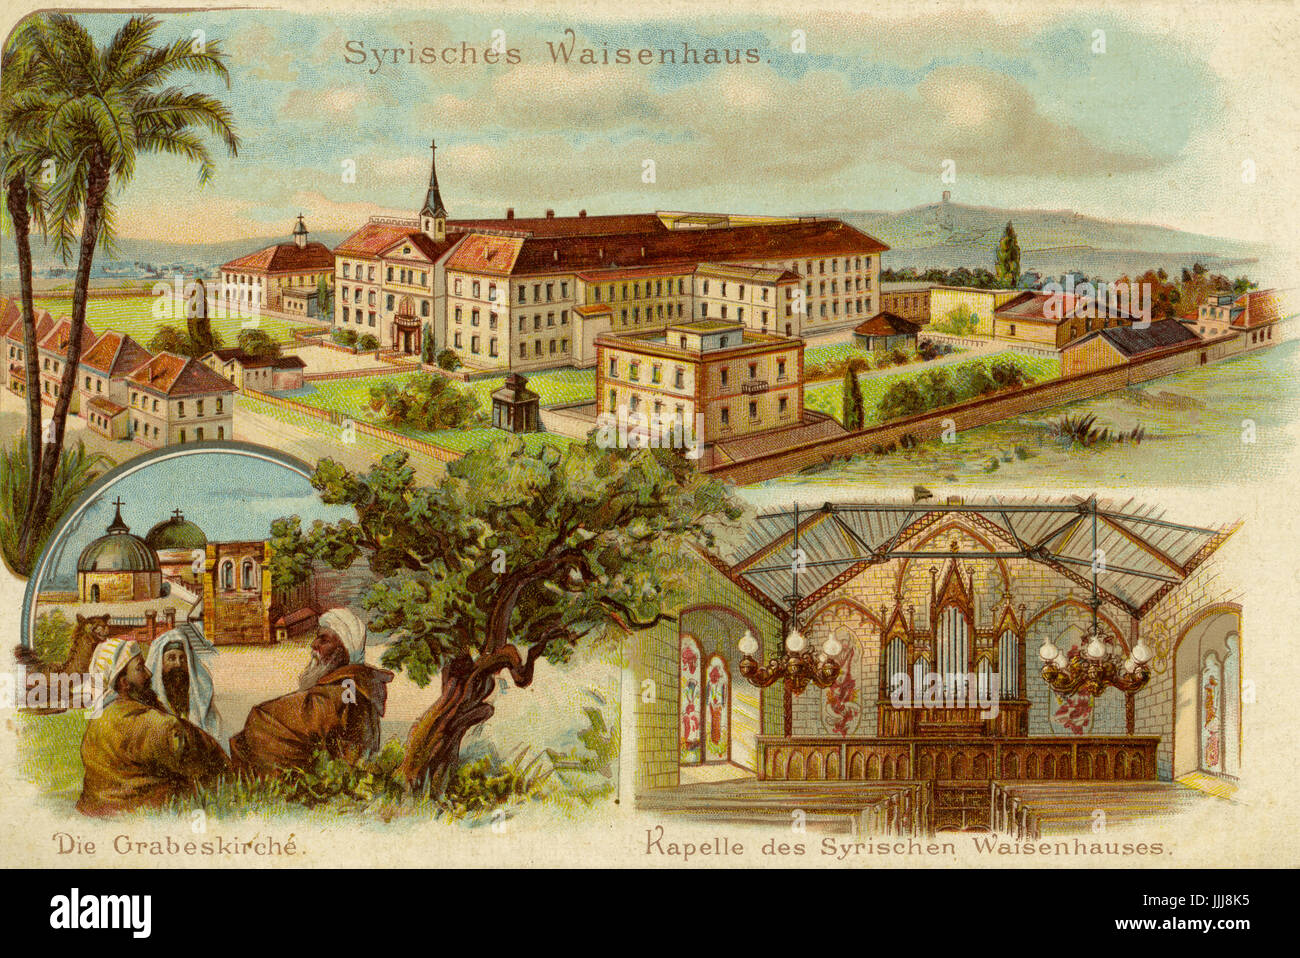 Schneller-Waisenhaus, auch genannt das syrische Waisenhaus, Deutsche Evangelische Waisenhaus, die in Jerusalem von 1860 bis 1940 betrieben. Postkarte, Ende 19. / Anfang 20. Jh. Stockfoto